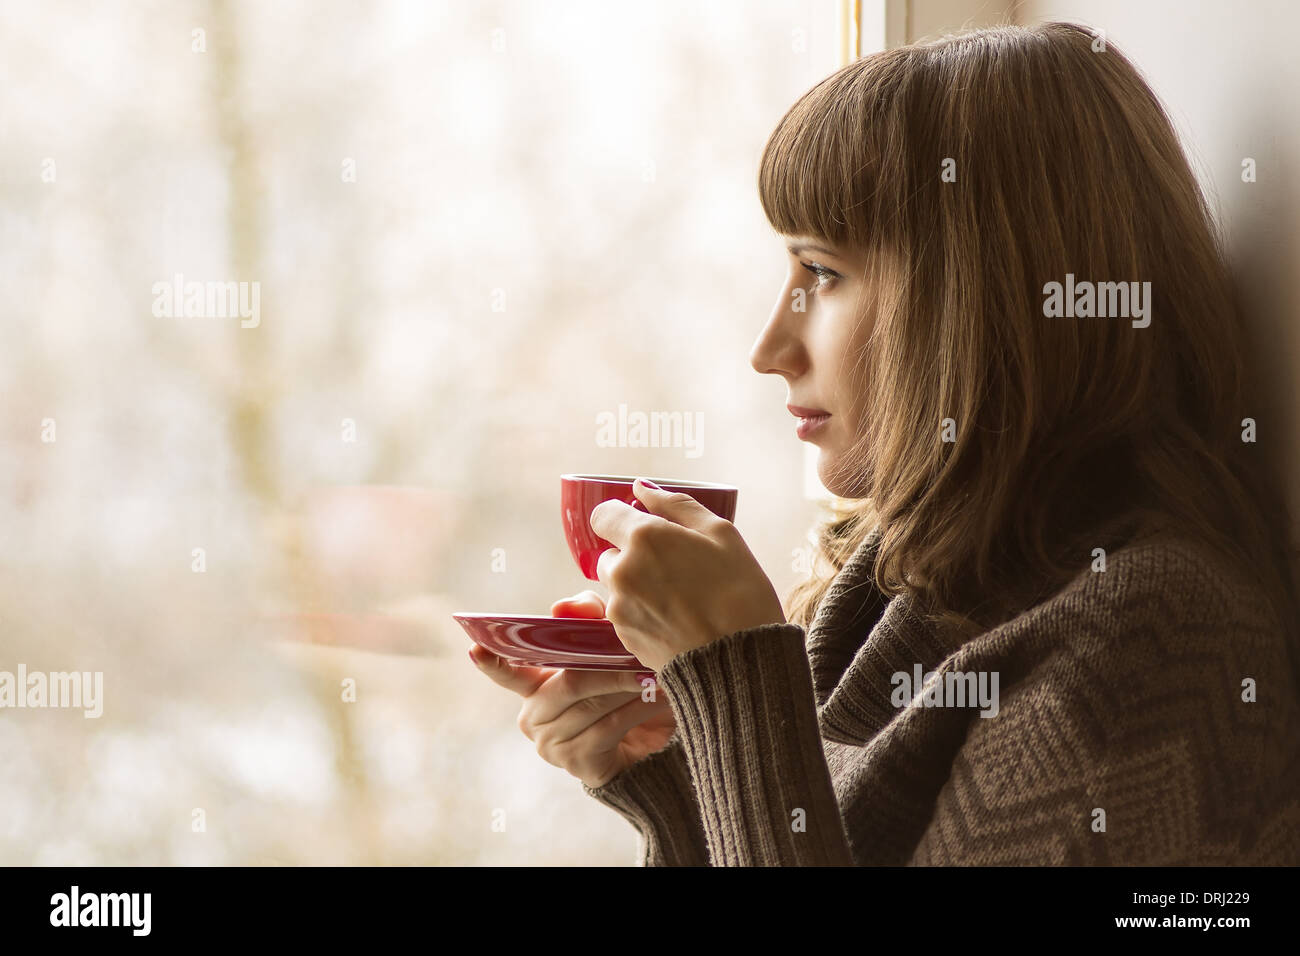 Beautiful girl drinking Coffee or Tea near Window Stock Photo